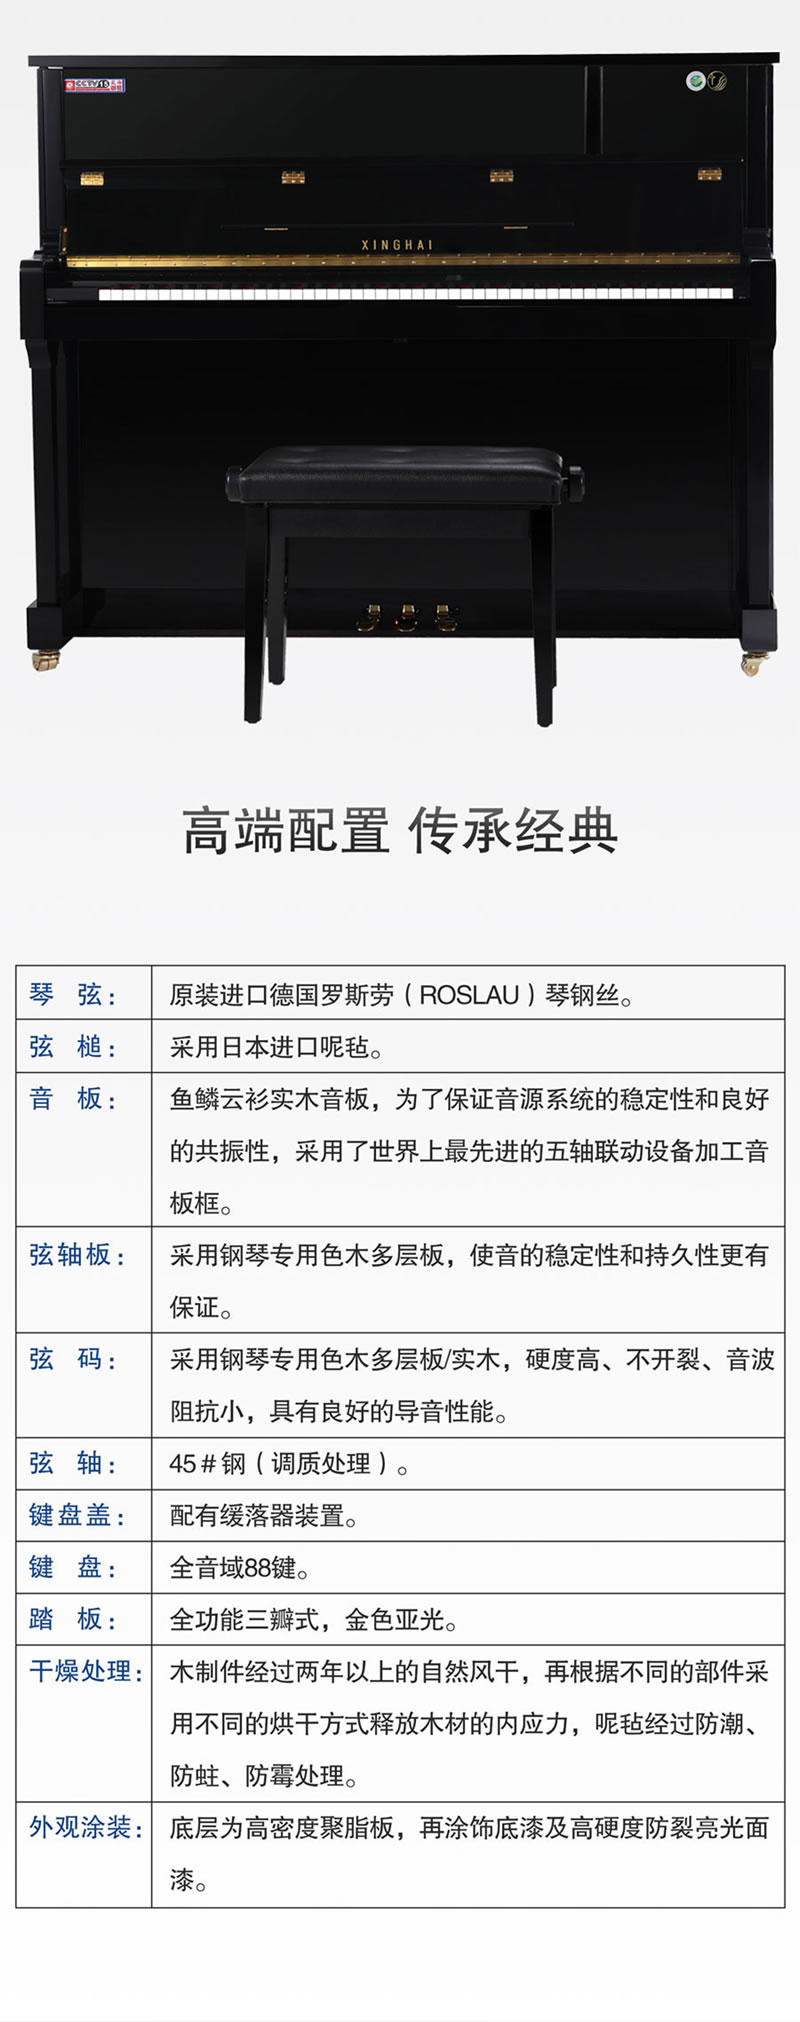 星海钢琴立式全新标准88键 XU-122BJ